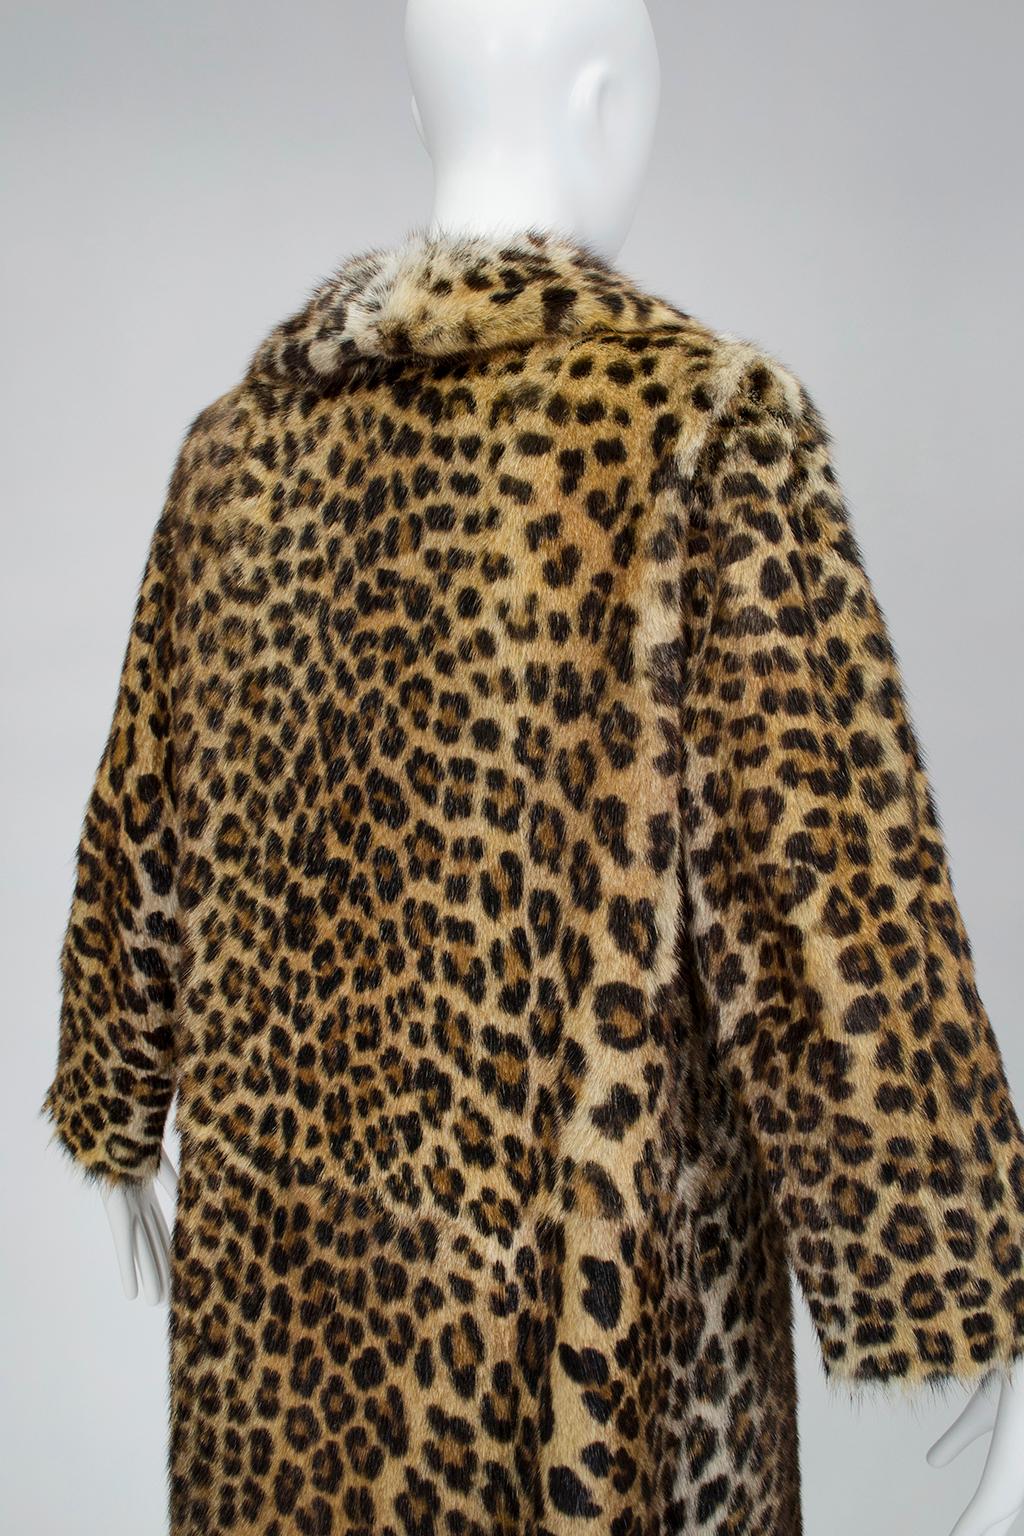 real leopard coat